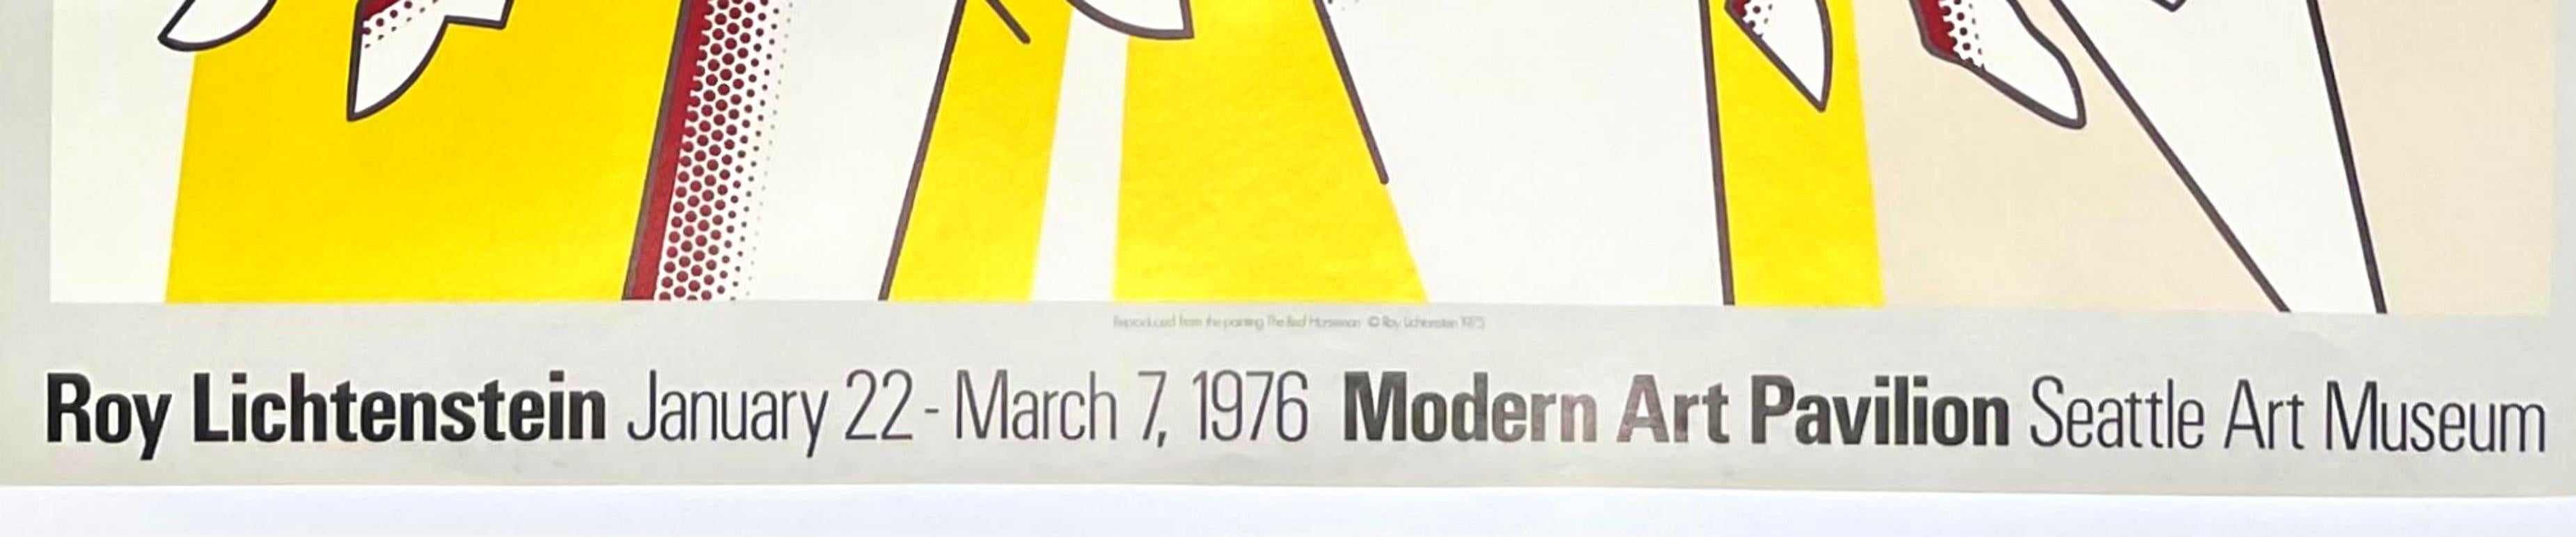 Roy Lichtenstein im Modern Art Pavilion, Seattle Art Museum Poster in limitierter Auflage, 1976
Offsetlithographie
Limitierte Auflage von 1500 Stück 
22 1/2 × 28 Zoll
Ungerahmt
Dieses Offsetlithografie-Poster in limitierter Auflage wurde anlässlich